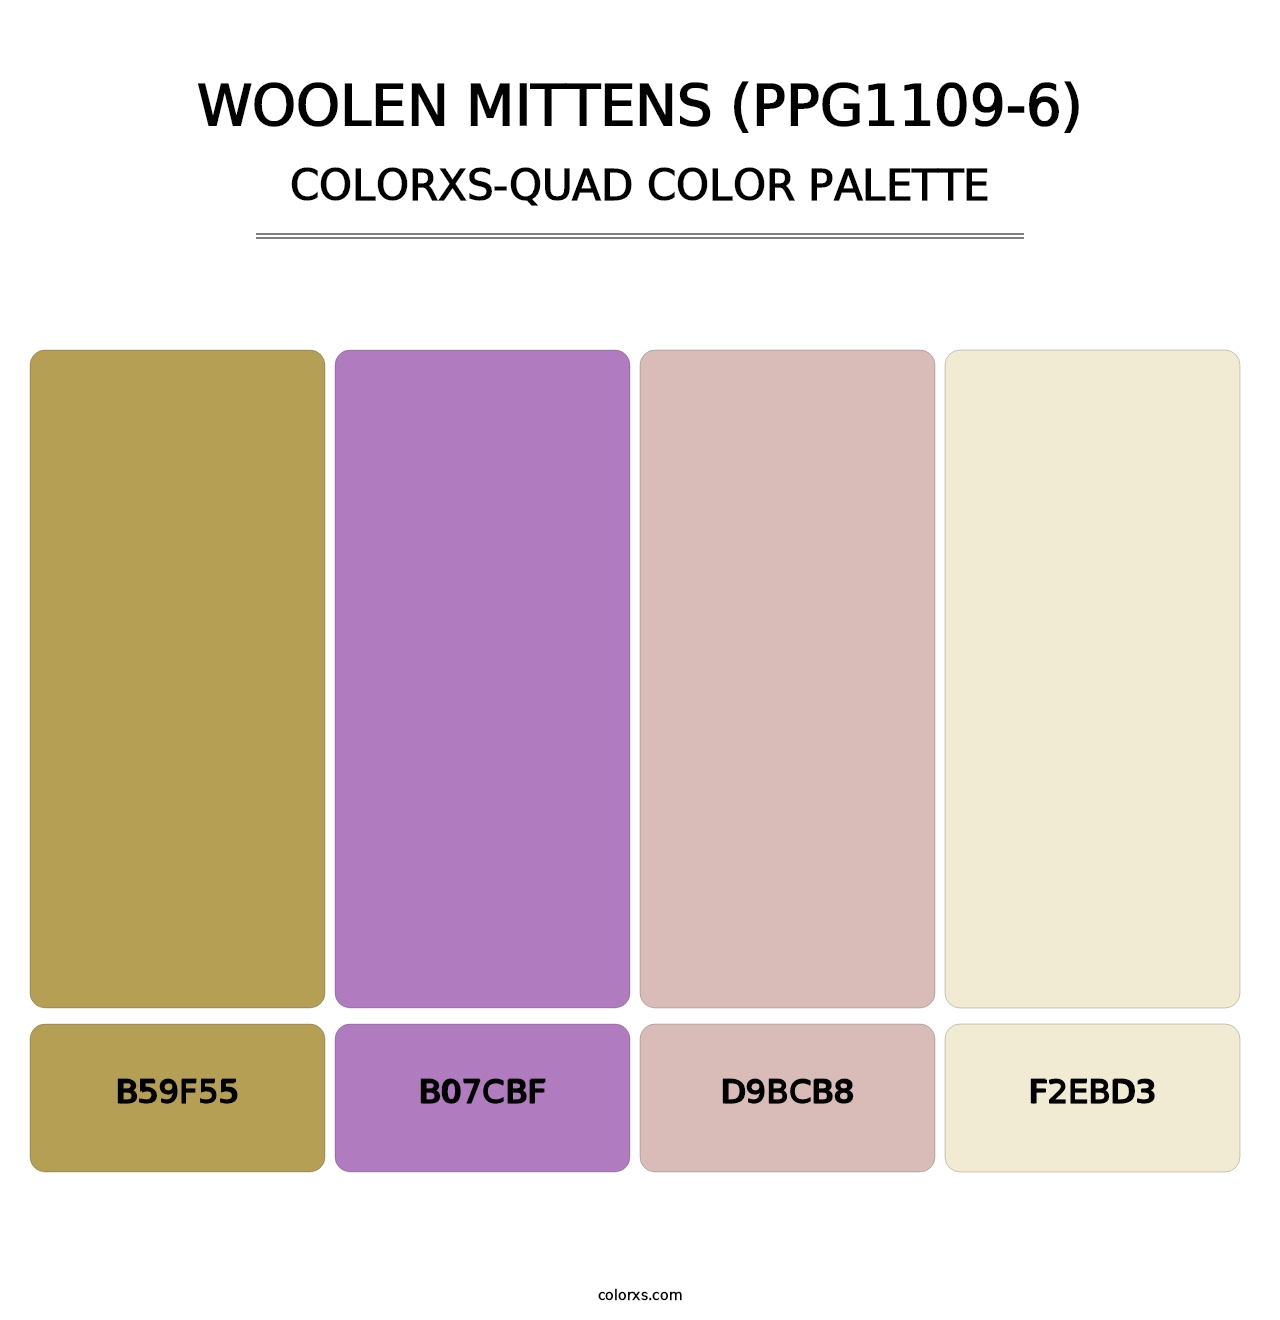 Woolen Mittens (PPG1109-6) - Colorxs Quad Palette